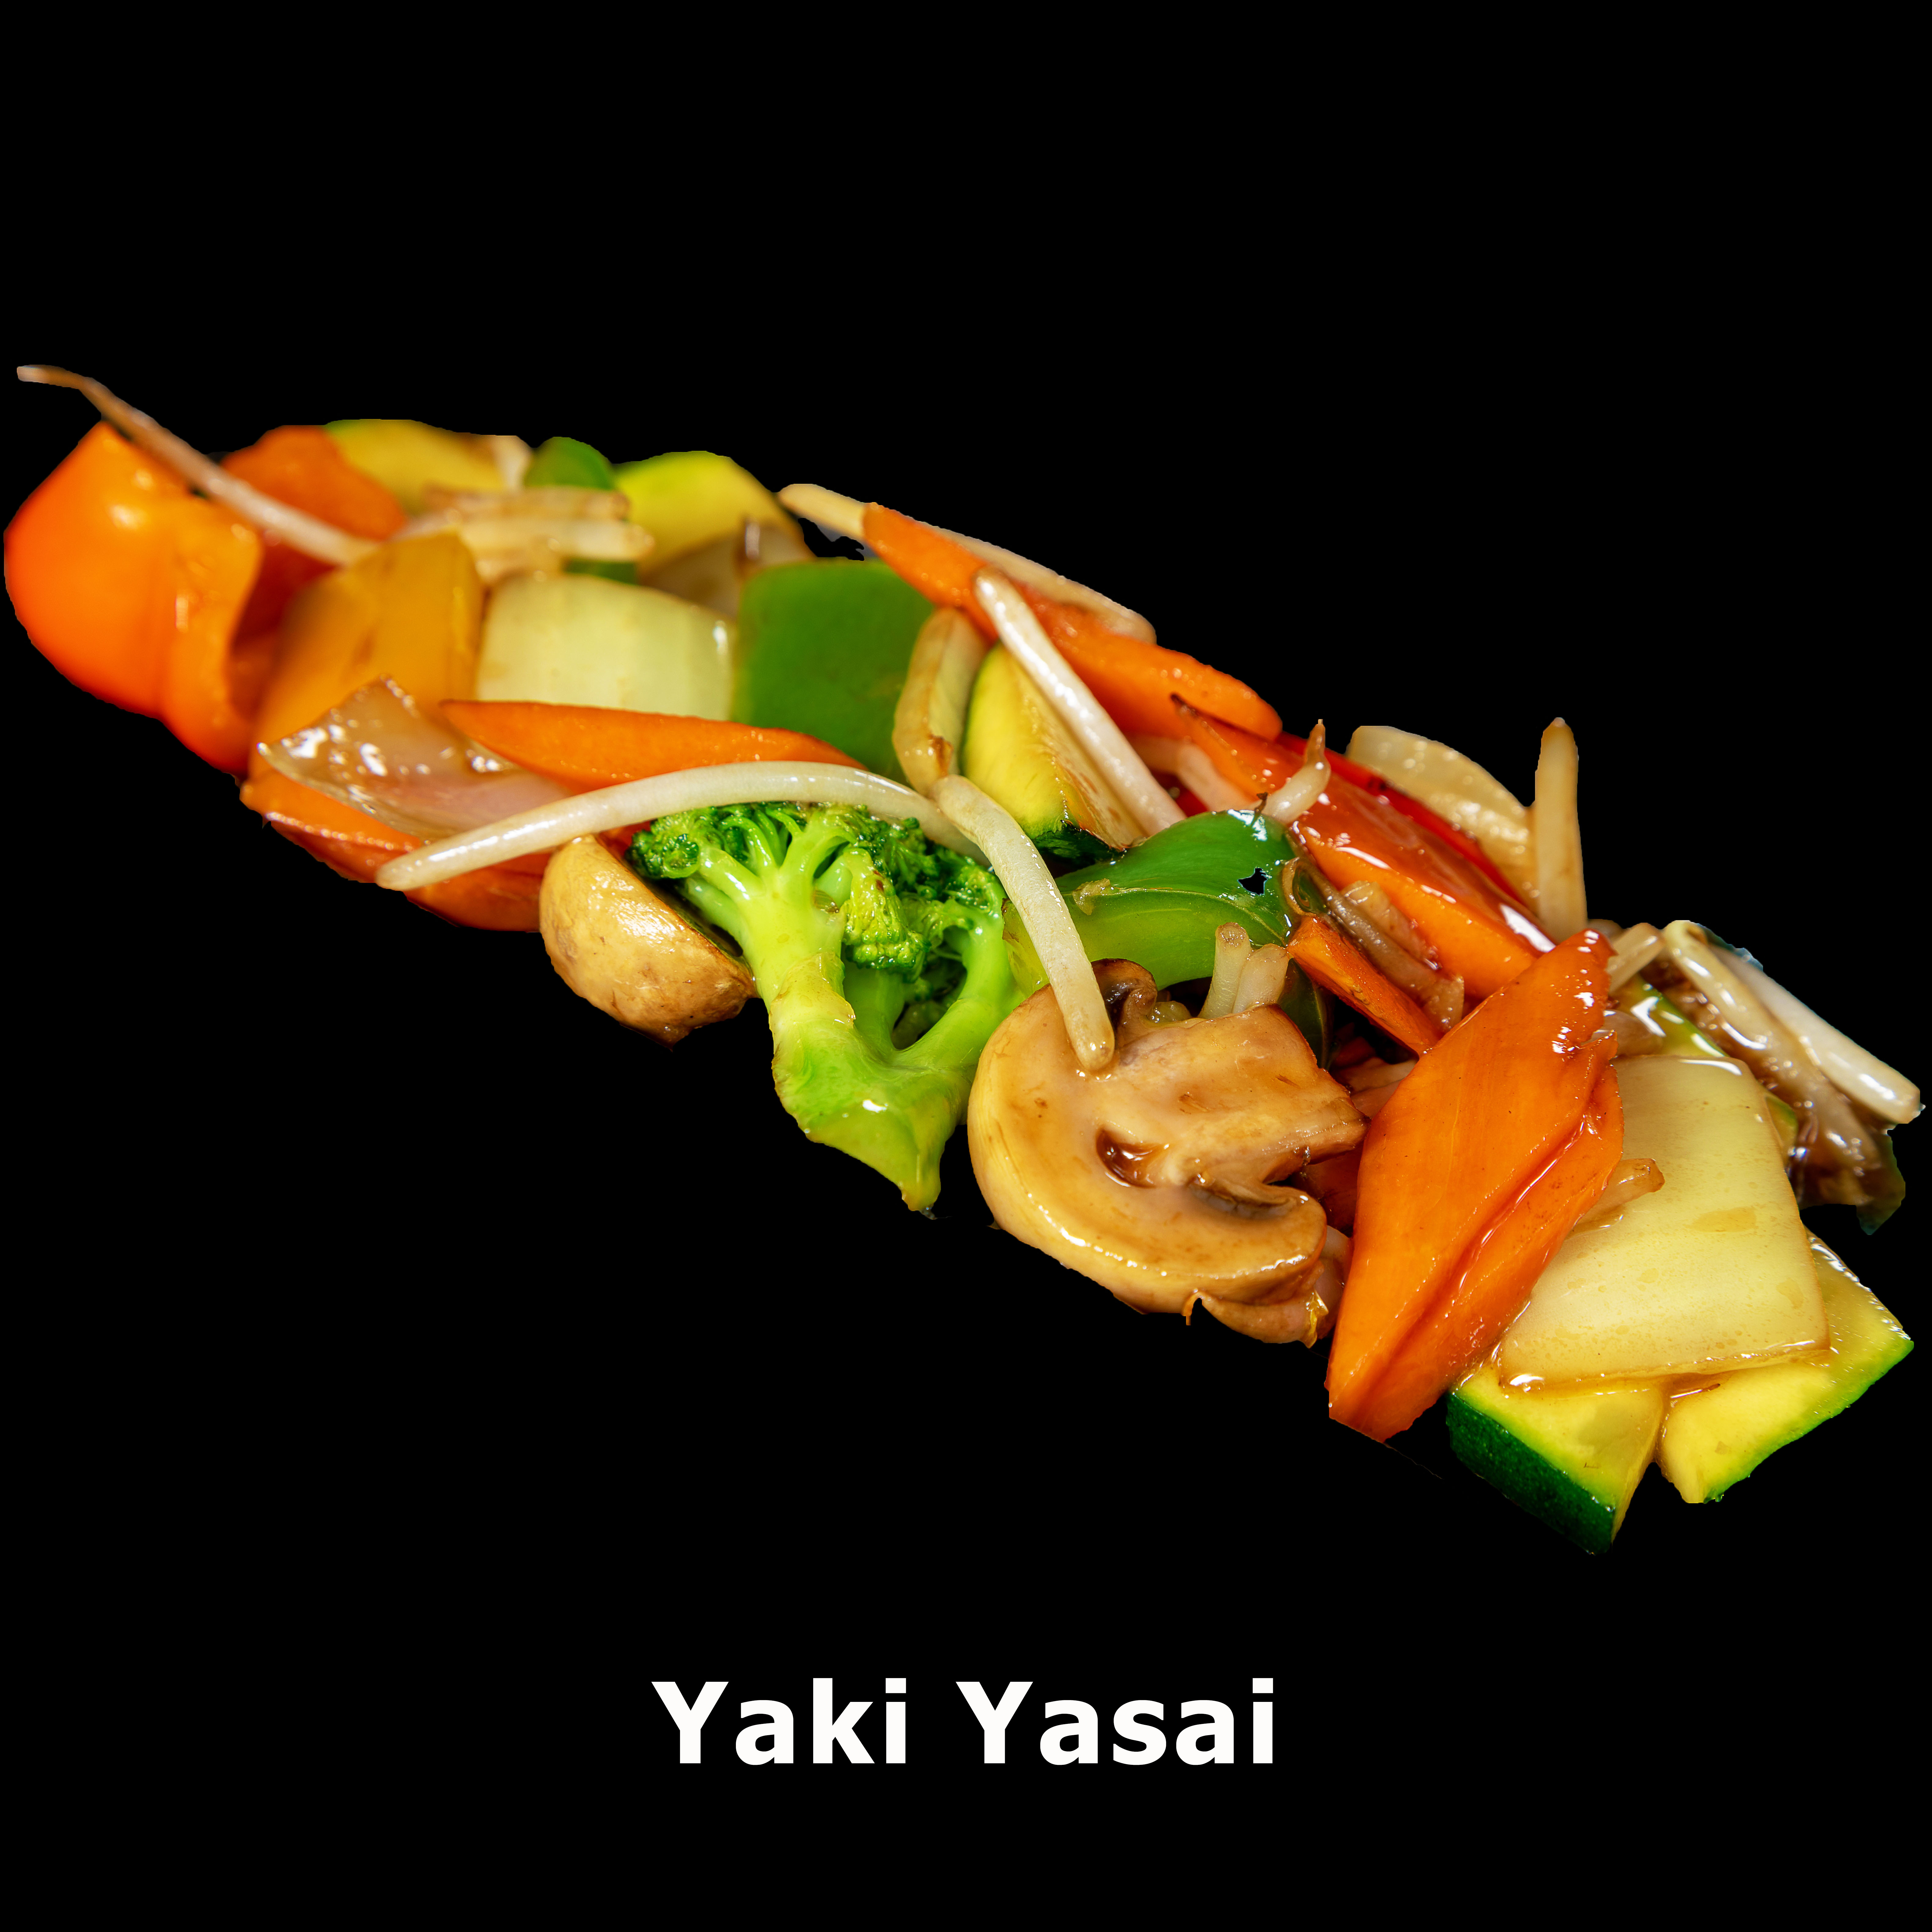 136. Yaki Yasai